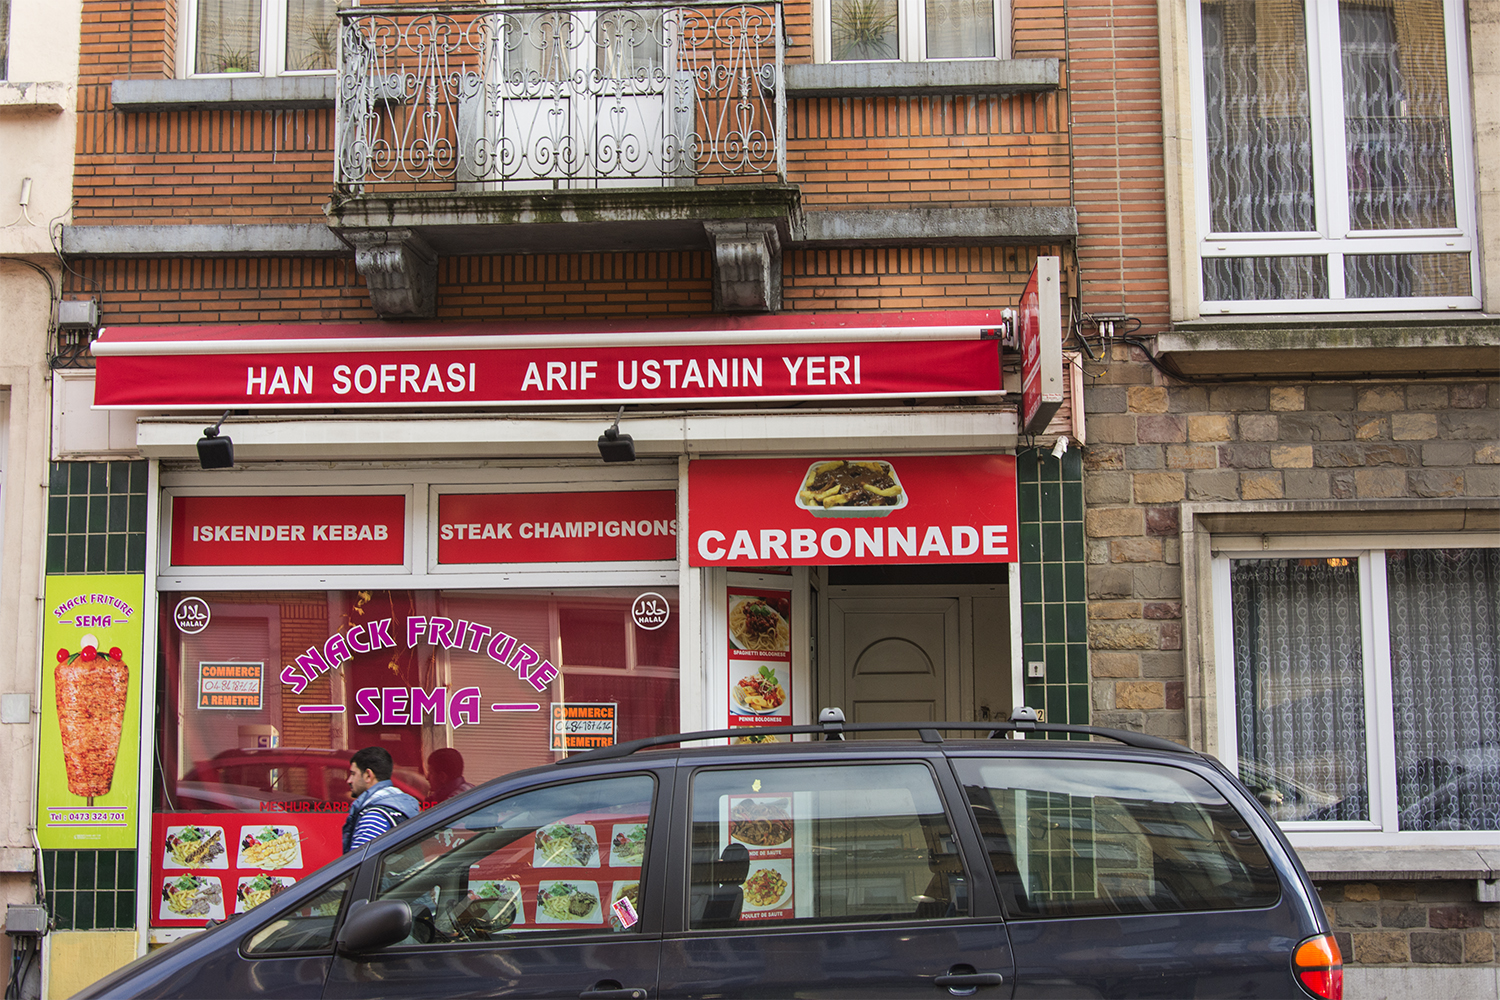 Kebab turc et Carbonade flamande cohabitent sans souci